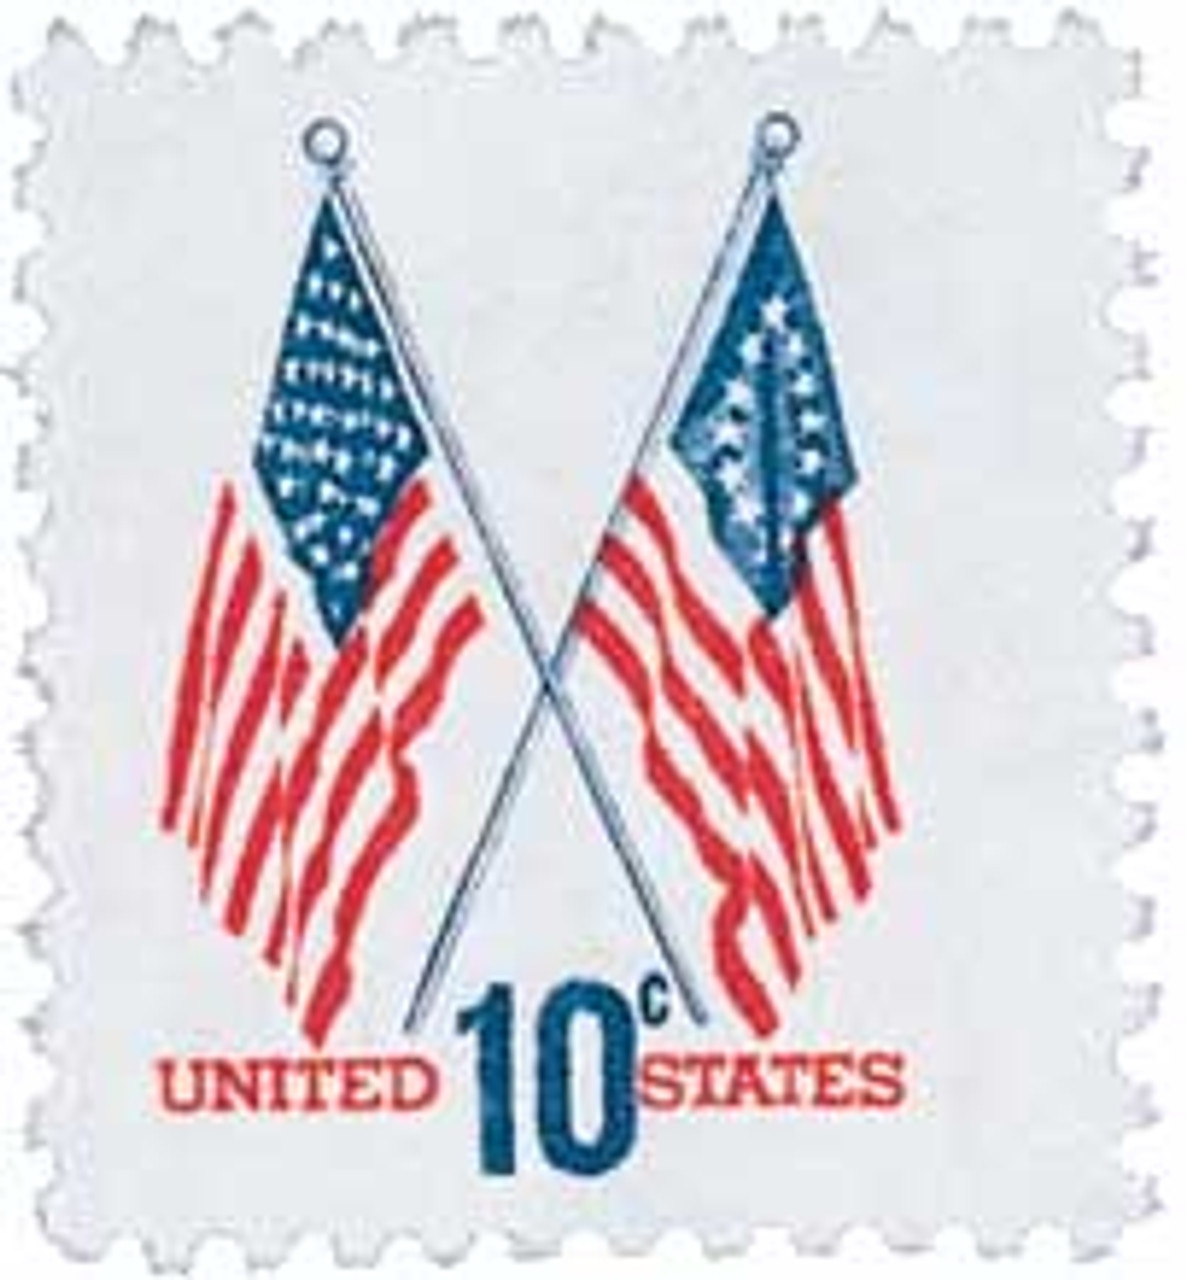 TEN 13c California State Flag Stamp Vintage Unused US Postage